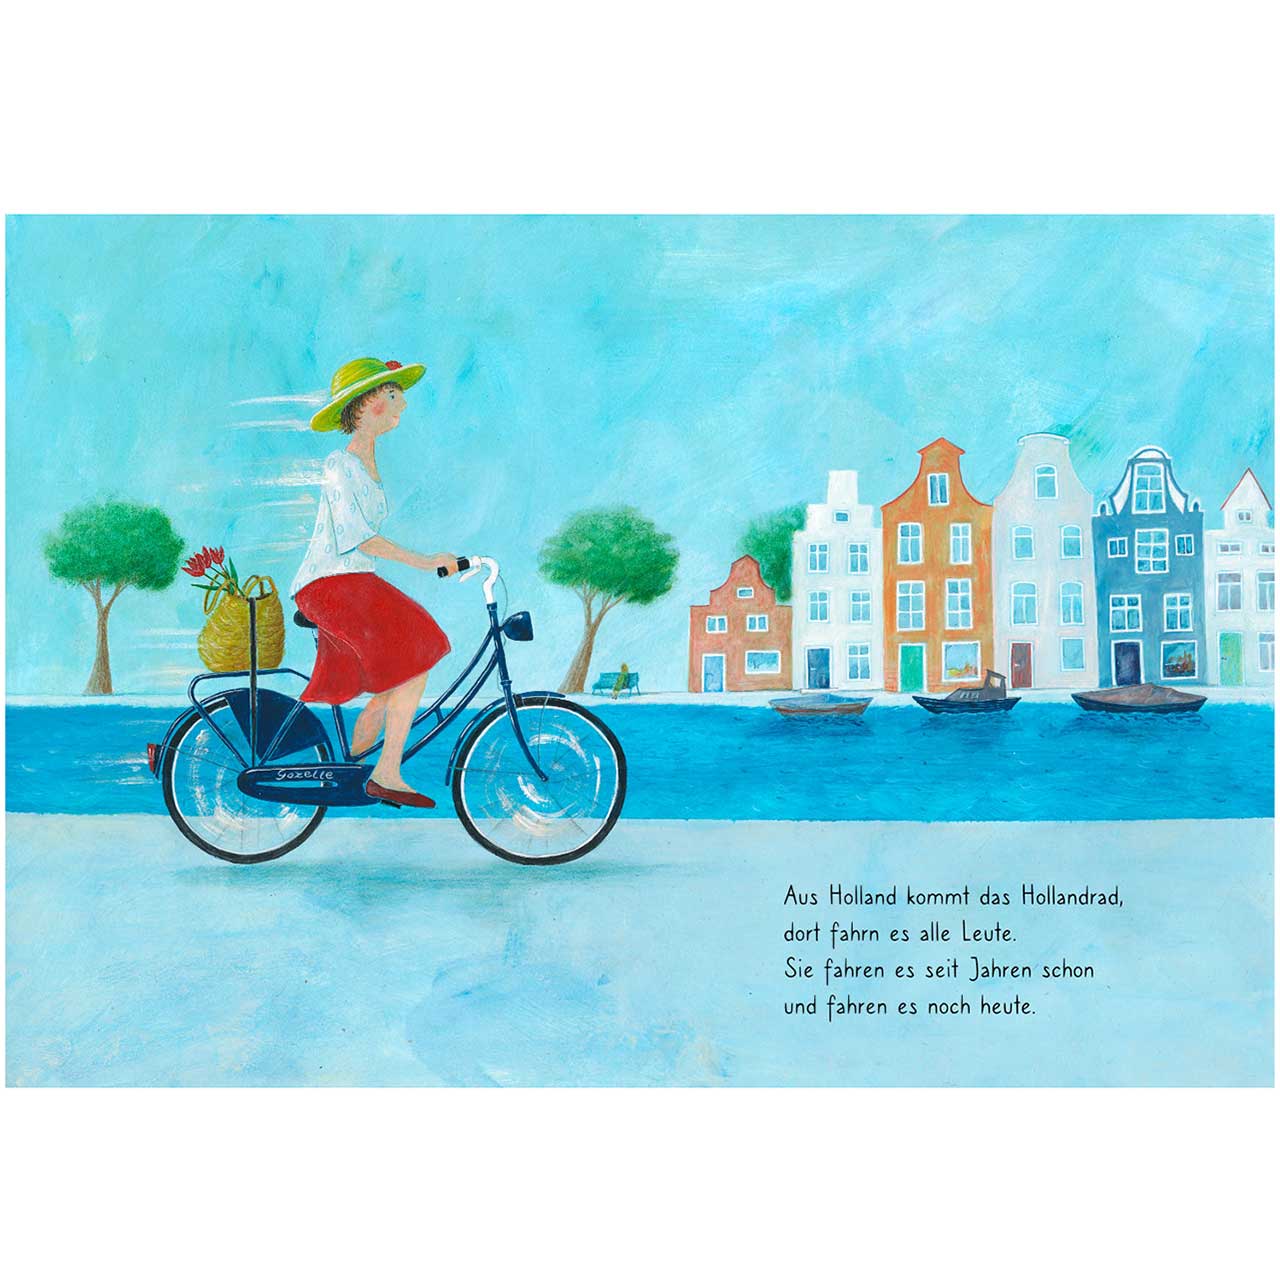 Rauf aufs Fahrrad, fertig, los! - Kinderbuch ab 3 Jahren